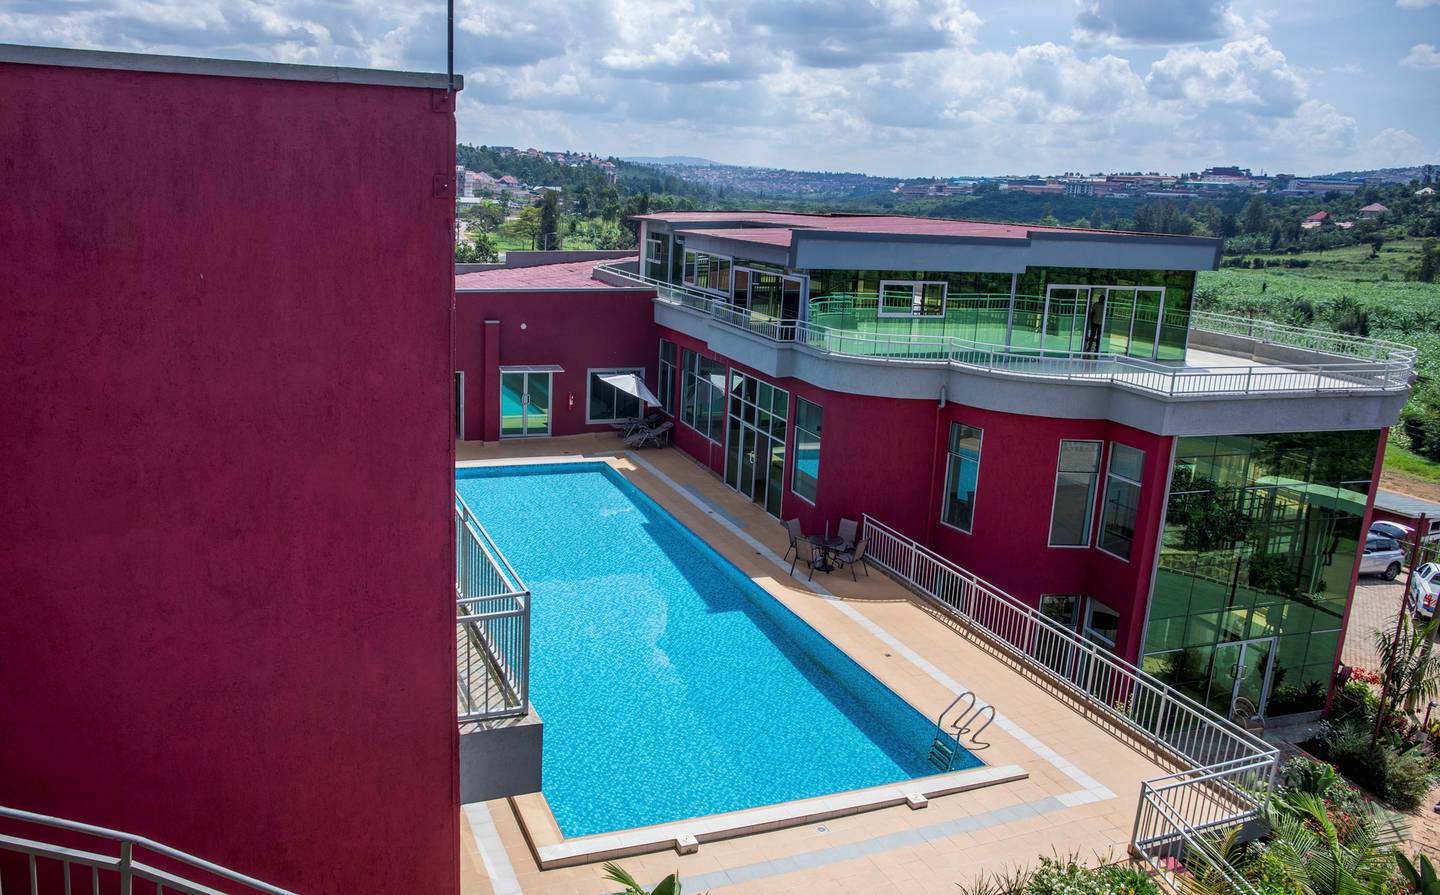 Desir Resort Hotel i Kigali i Rwanda er et av stedene som forbereder seg på å huse asylsøkere som blir sendt fra Storbritannia.